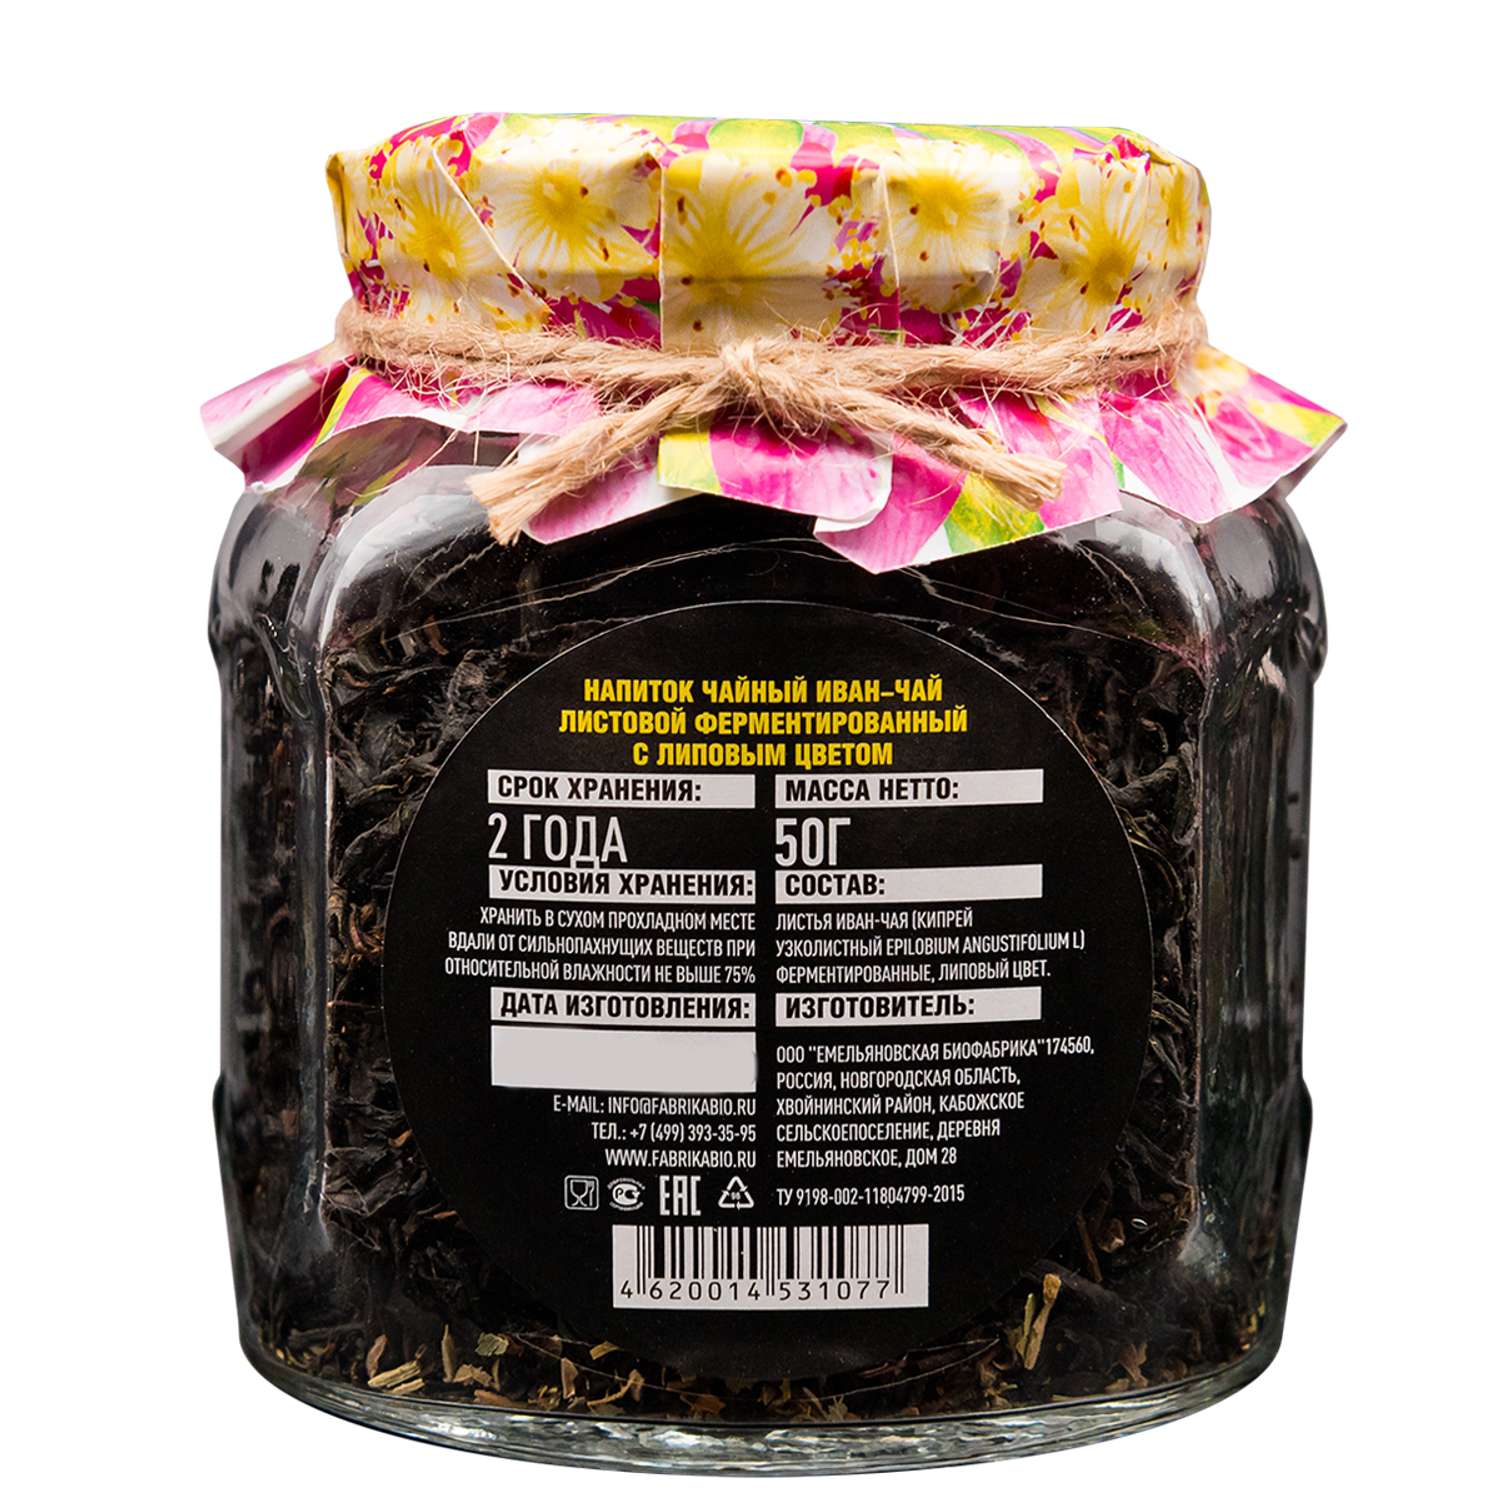 Чай Емельяновская Биофабрика иван-чай в стеклянной банке с липовым цветом ферментированный 50 гр. - фото 3